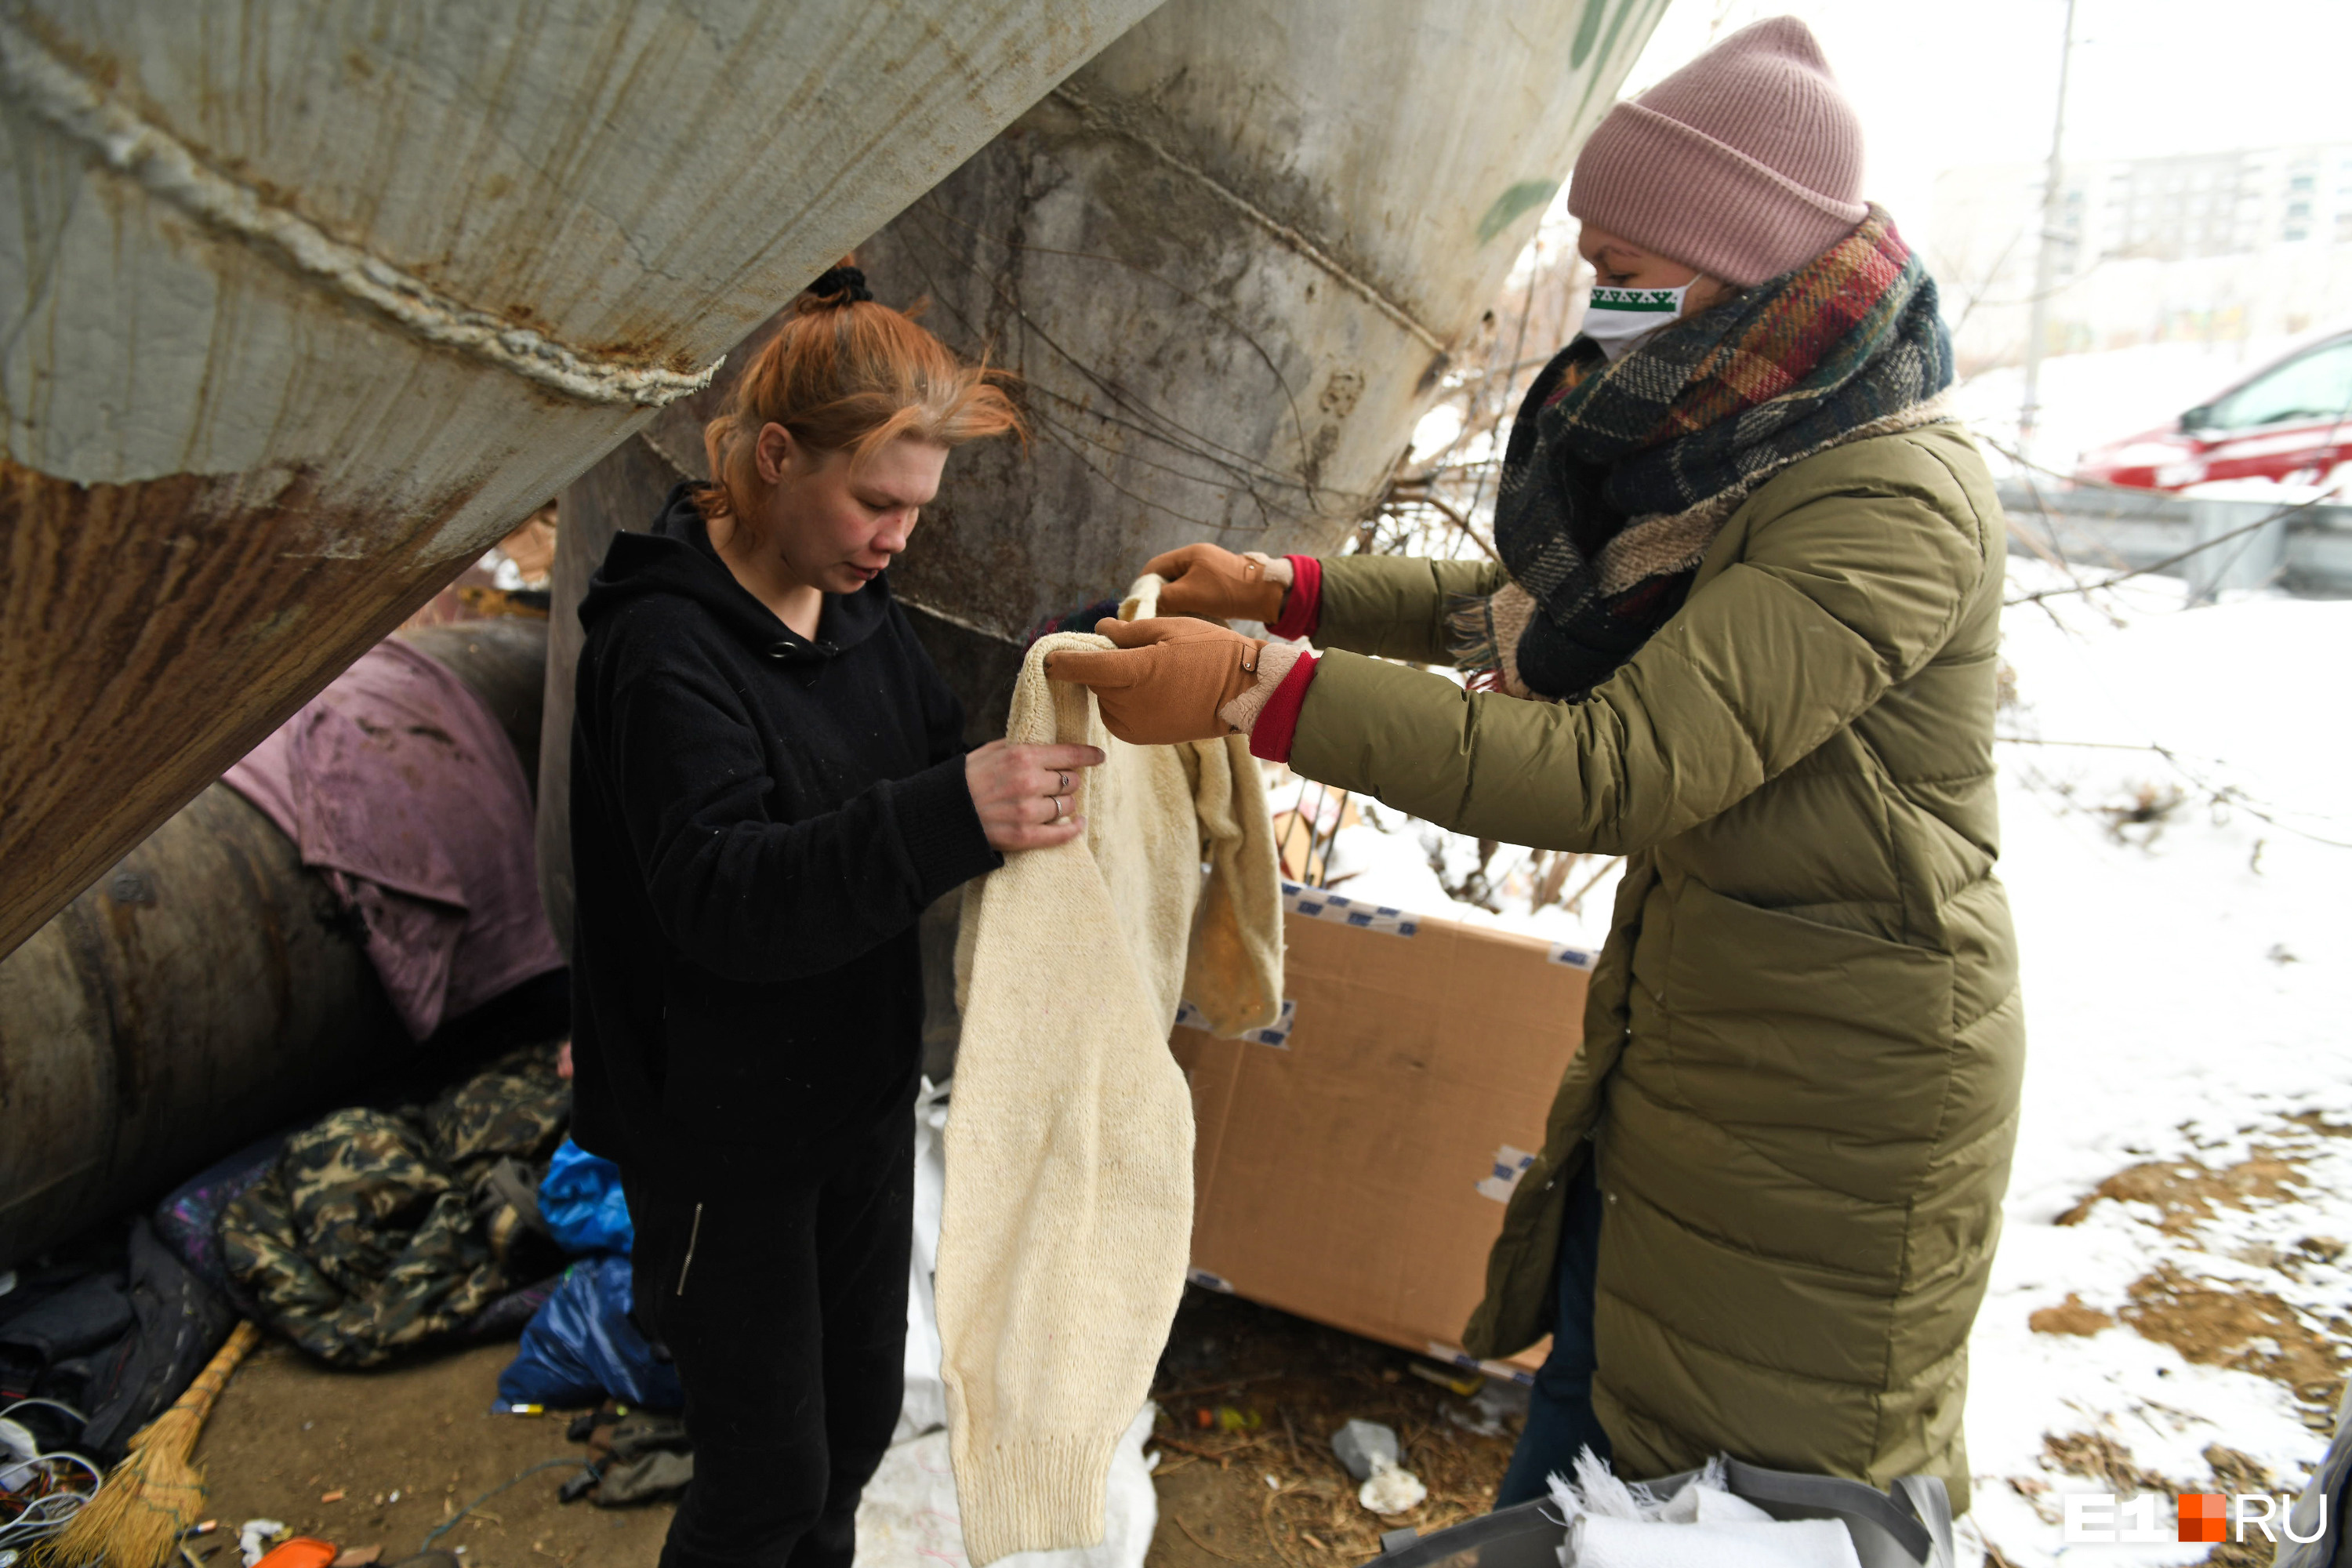 Благодаря теплым вещам, которые передают благотворители, бездомные могут пережить зиму 